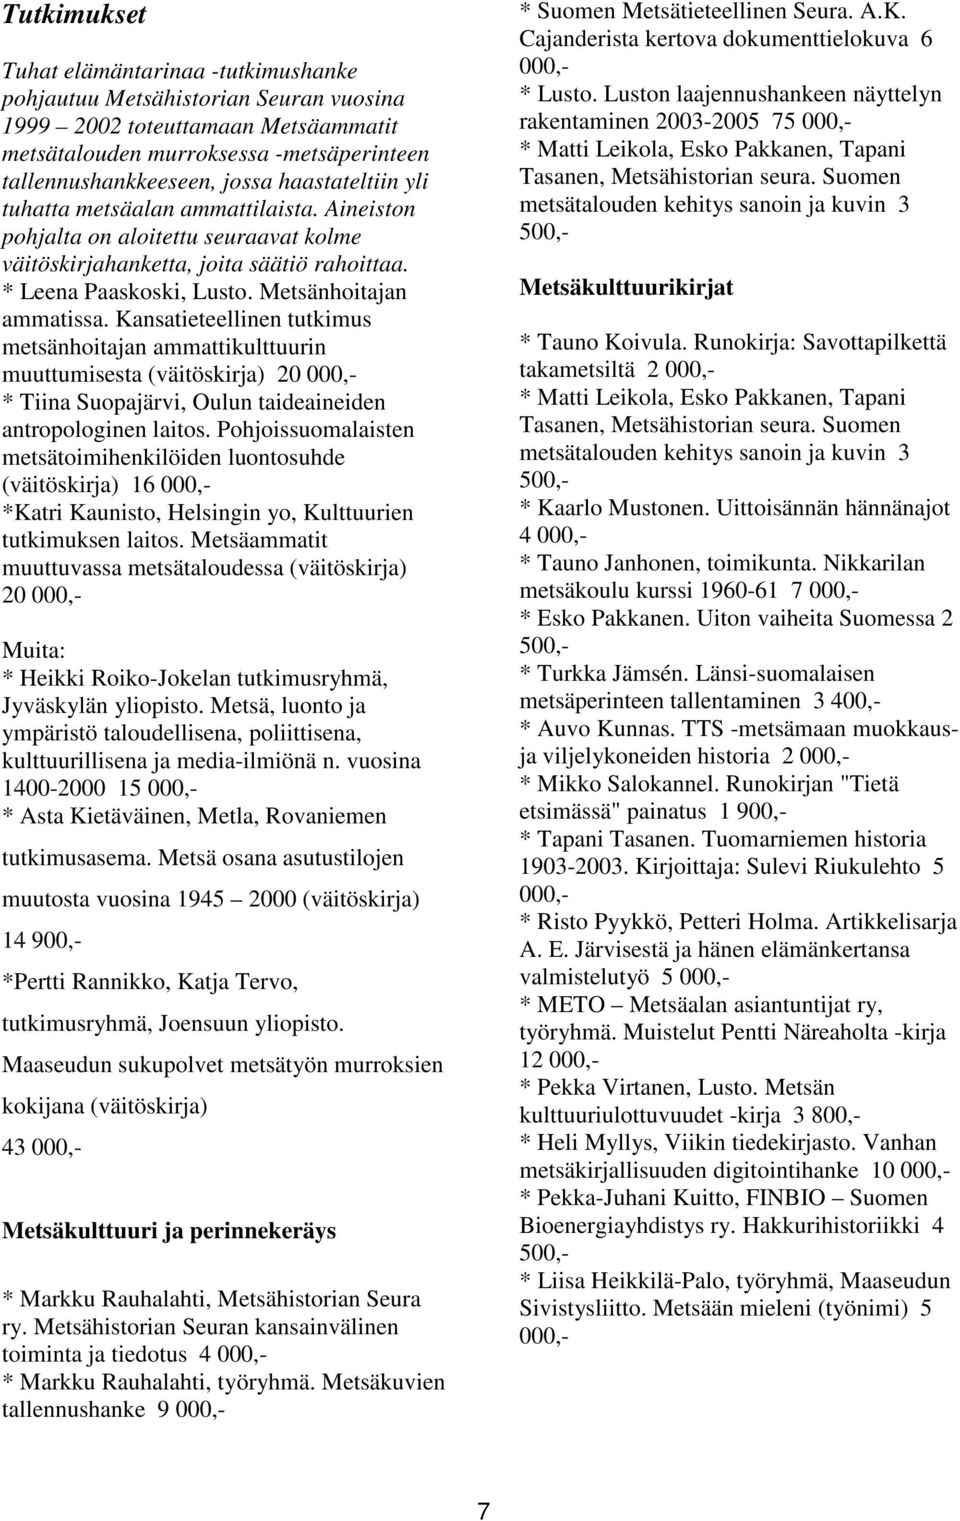 Kansatieteellinen tutkimus metsänhoitajan ammattikulttuurin muuttumisesta (väitöskirja) 20 000,- * Tiina Suopajärvi, Oulun taideaineiden antropologinen laitos.